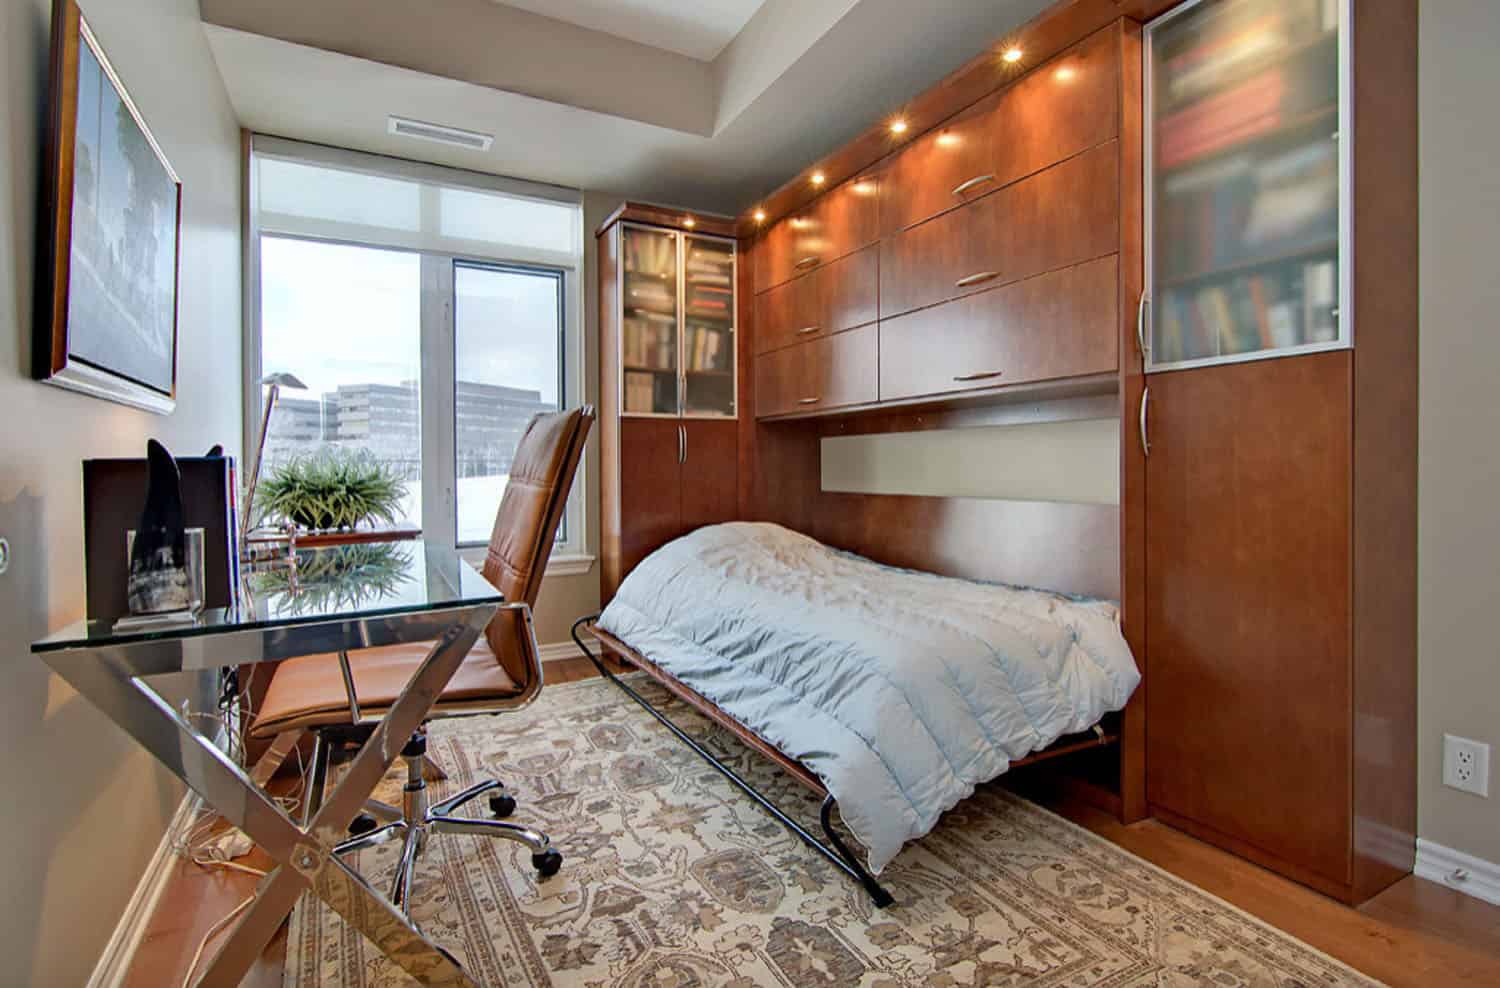 Chiếc giường Murphy bằng gỗ sậm màu tích hợp trong tủ sách cực lớn, đối diện góc làm việc tại gia. Kích thước giường đơn cho phép bạn ngả lưng nghỉ ngơi hoặc dành cho khách đến thăm nhà ngủ lại.